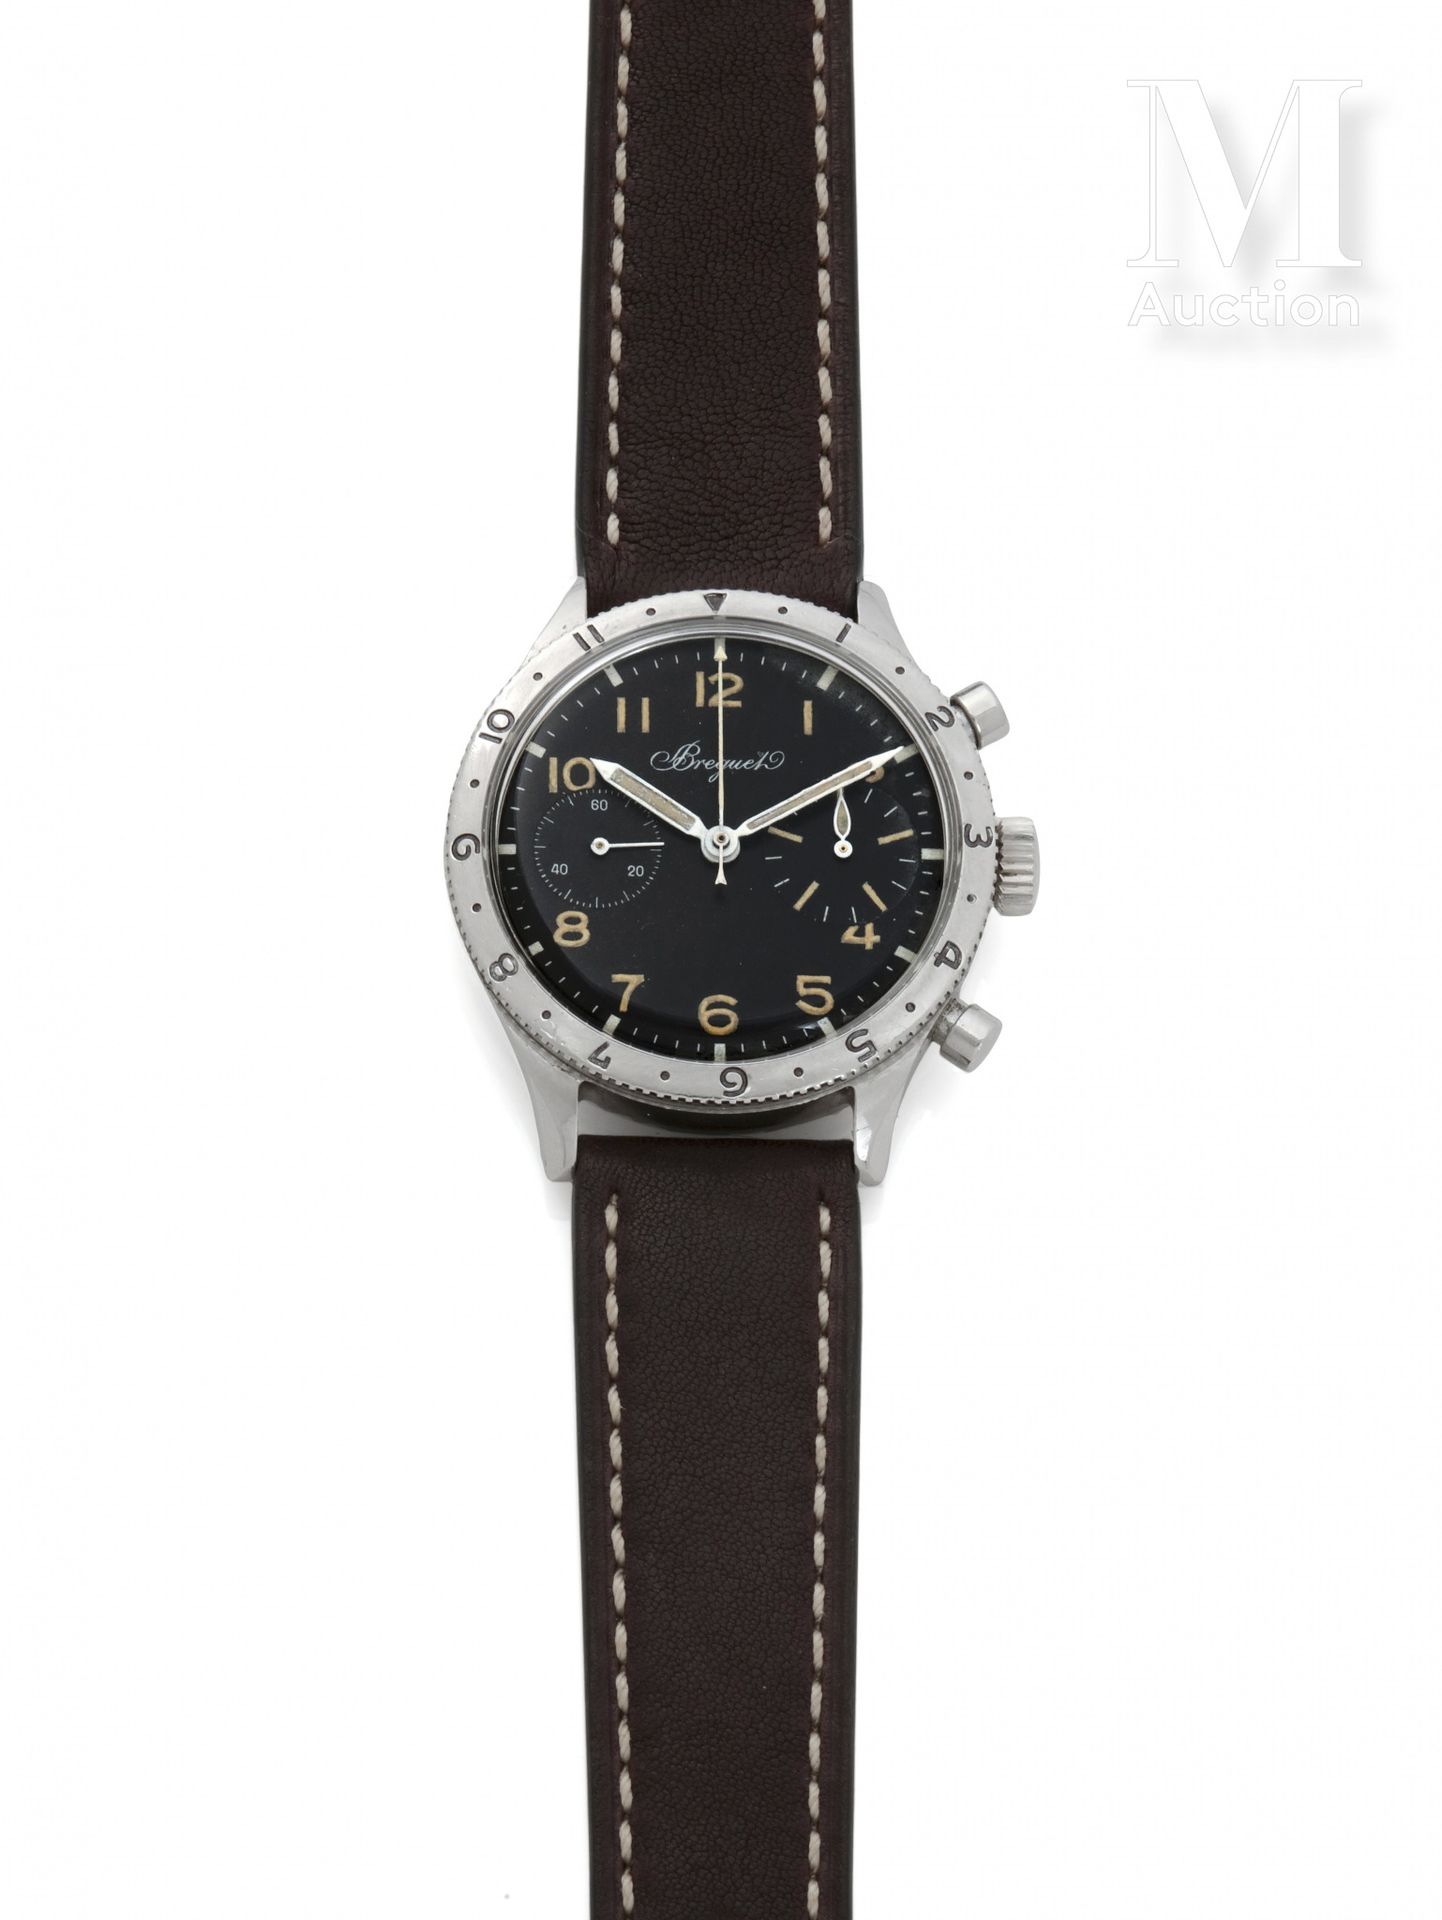 BREGUET Typ XX 

Um 1955

Stahlgehäuse n°207x

Mechanisches Uhrwerk mit Handaufz&hellip;